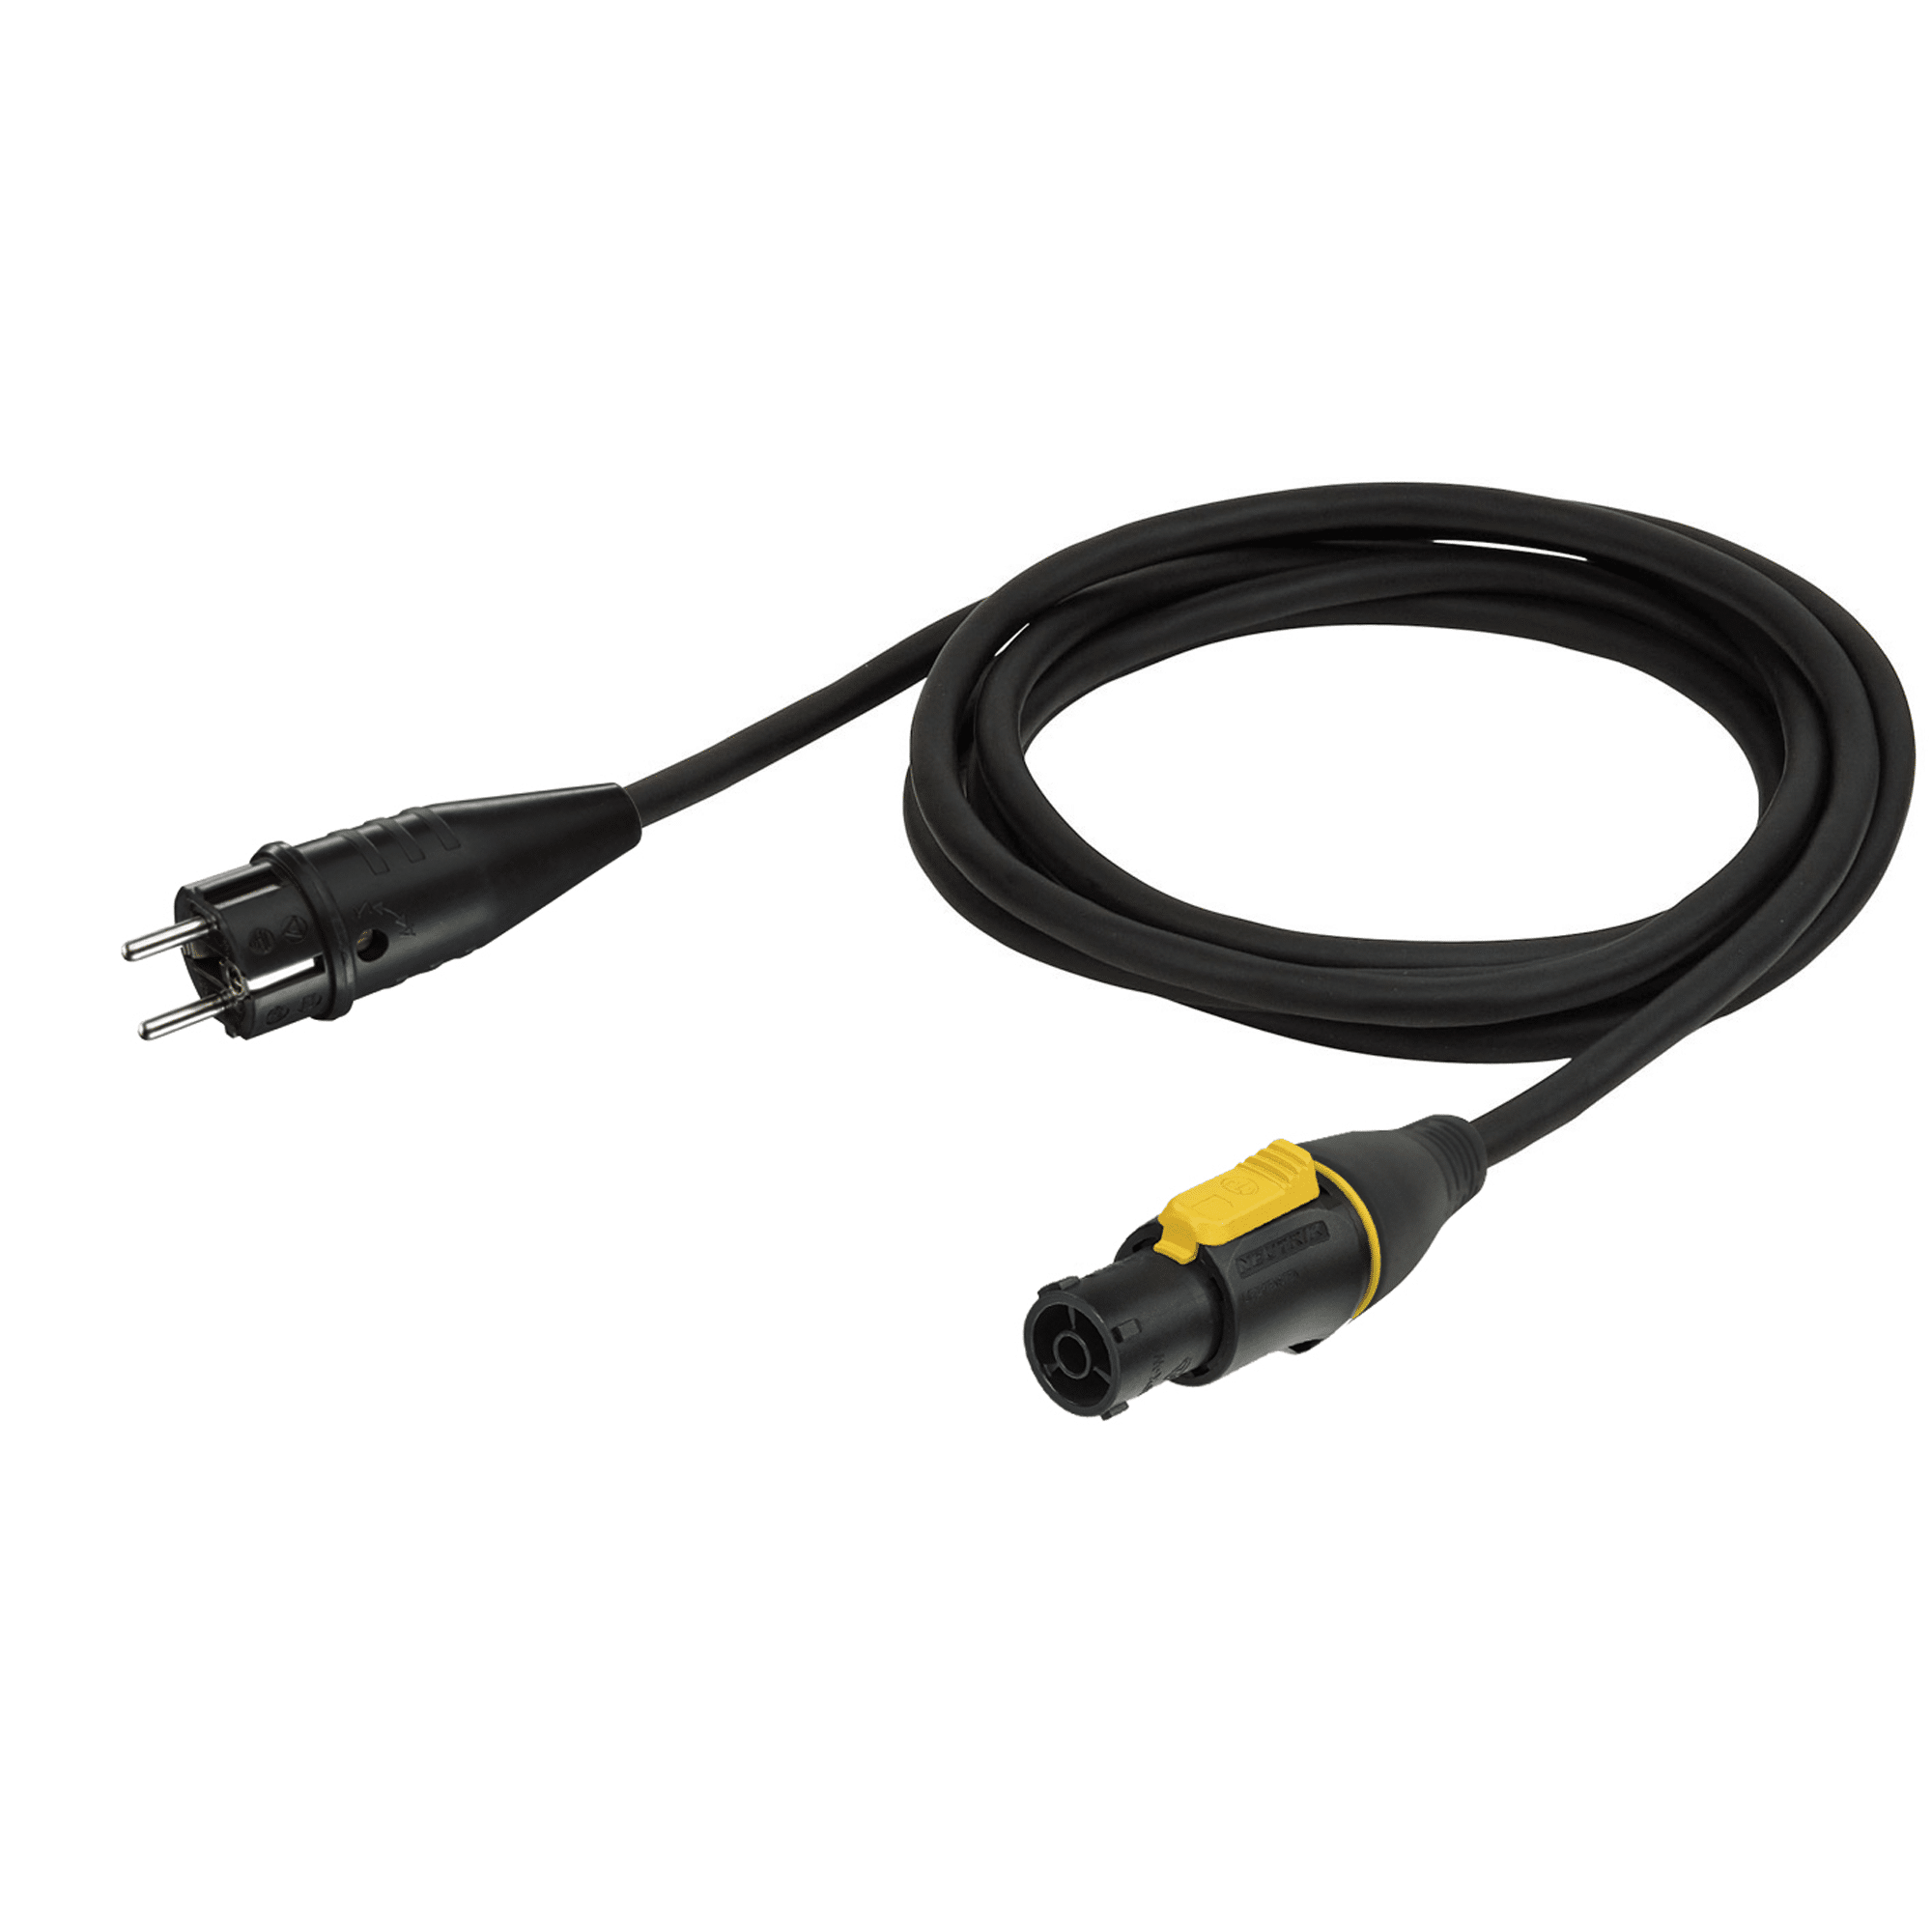 Power Cable powerCON TRUE1 to Schuko 3x 1.5 mm² - Onlinediscowinkel.nl